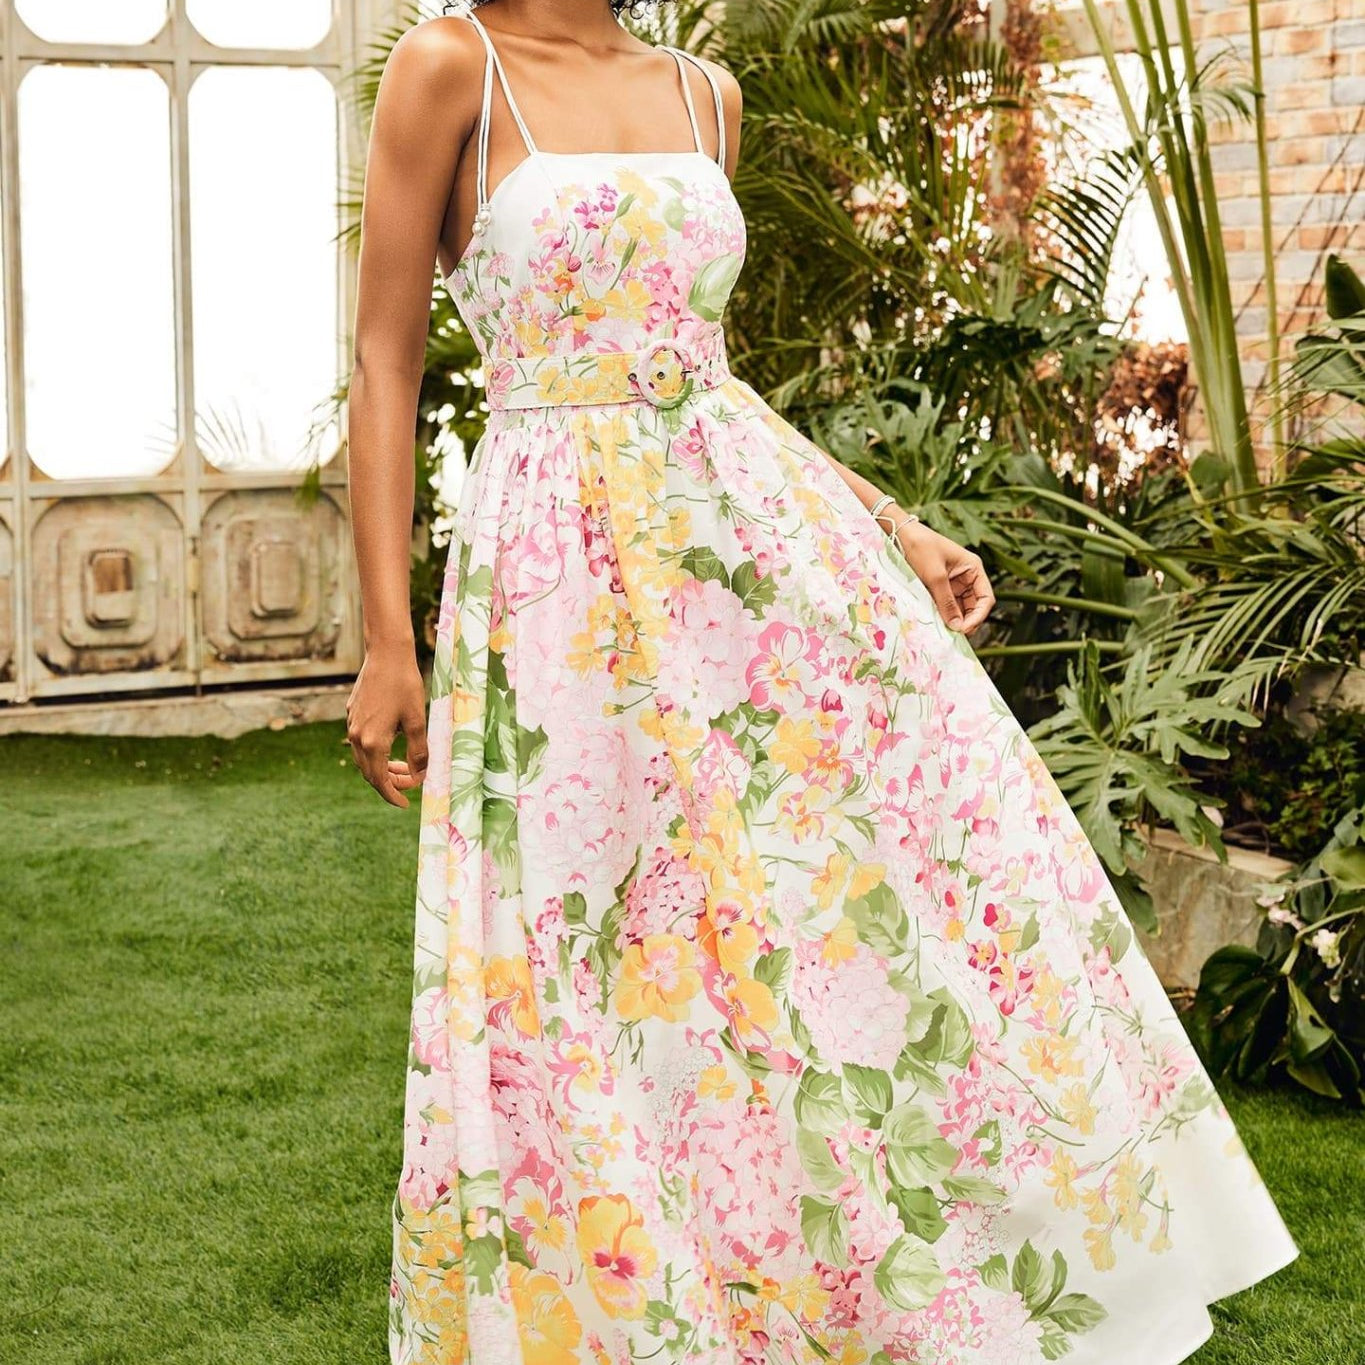 dresses-Estra Floral Printed Maxi Slip Dress-SD00602272332-Multi-S - Sunfere